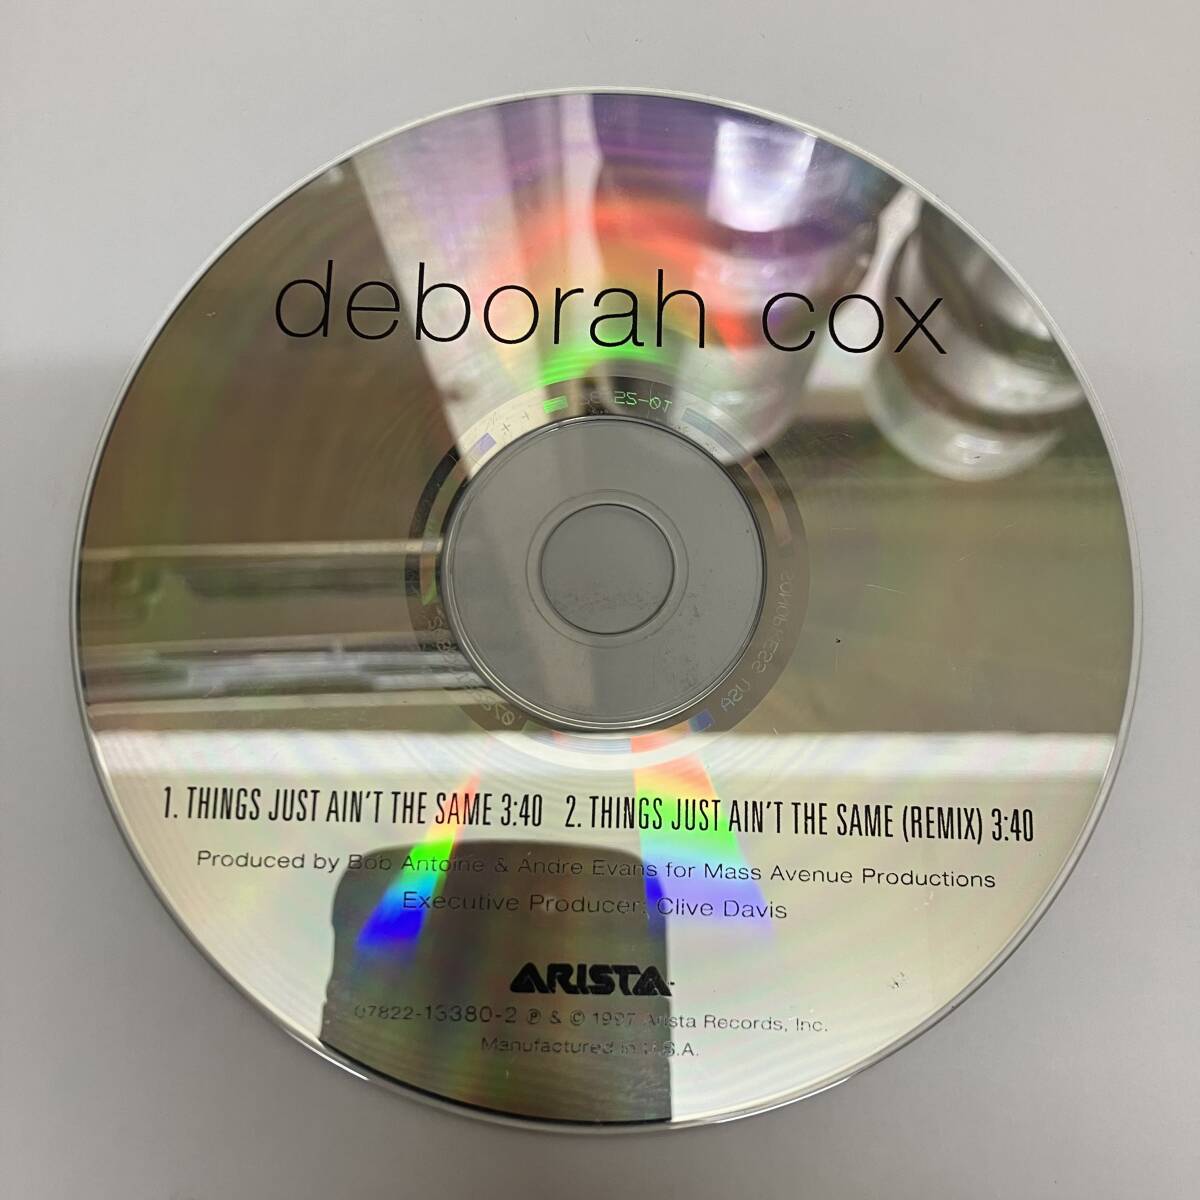 裸36 HIPHOP,R&B DEBORAH COX - THINGS JUST AIN'T THE SAME シングル,REMIX CD 中古品_画像1